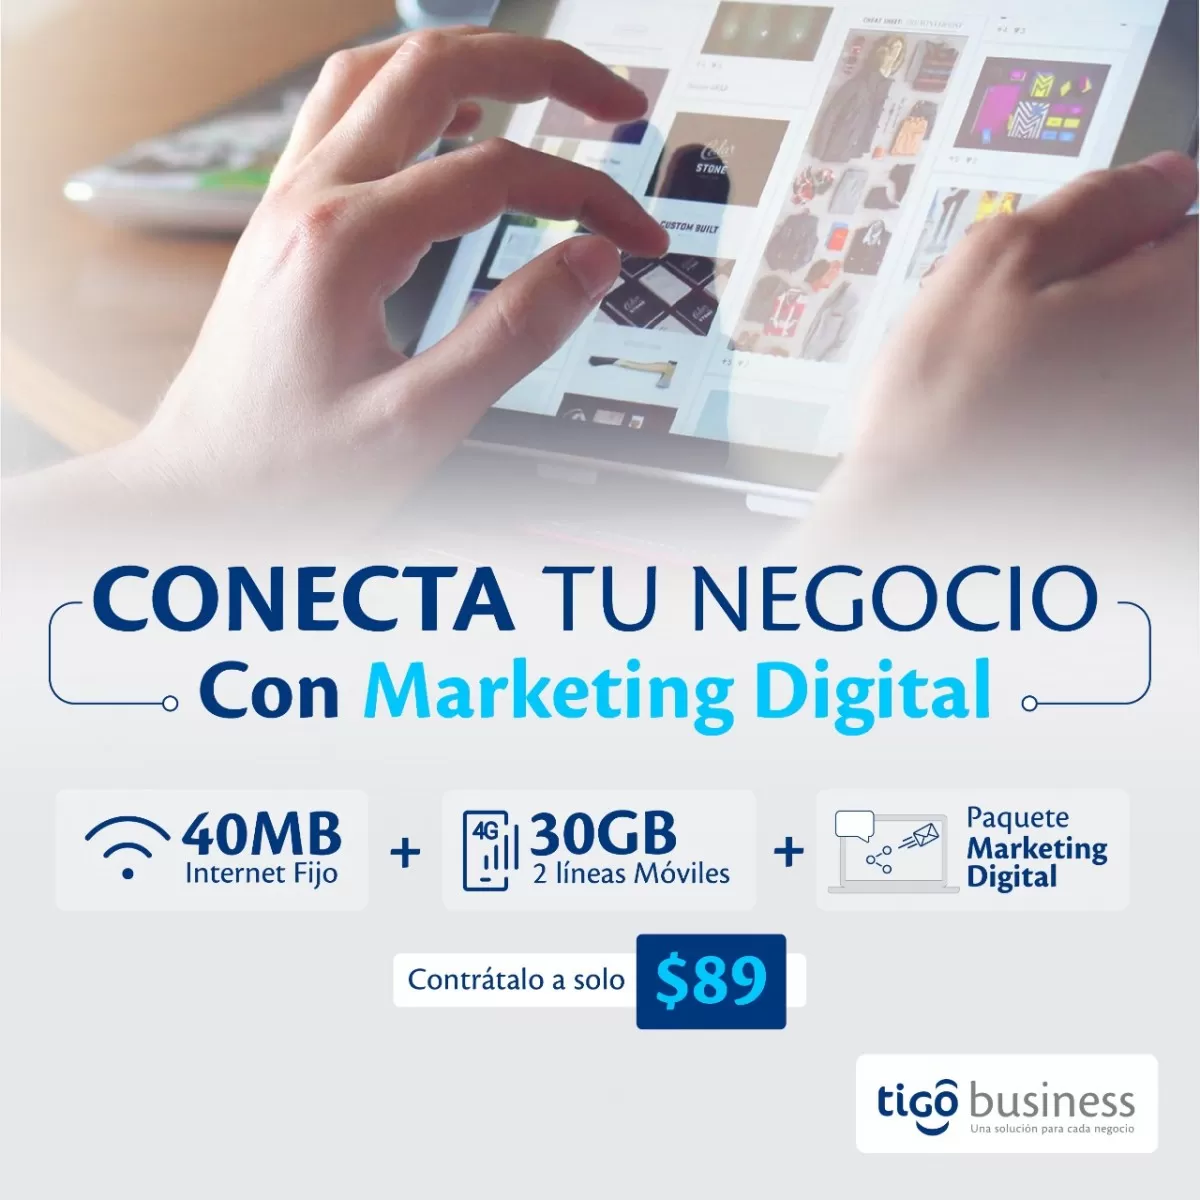 “Tigo Business lanza soluciones de Marketing Digital y Conectividad para empresas emprendedoras”